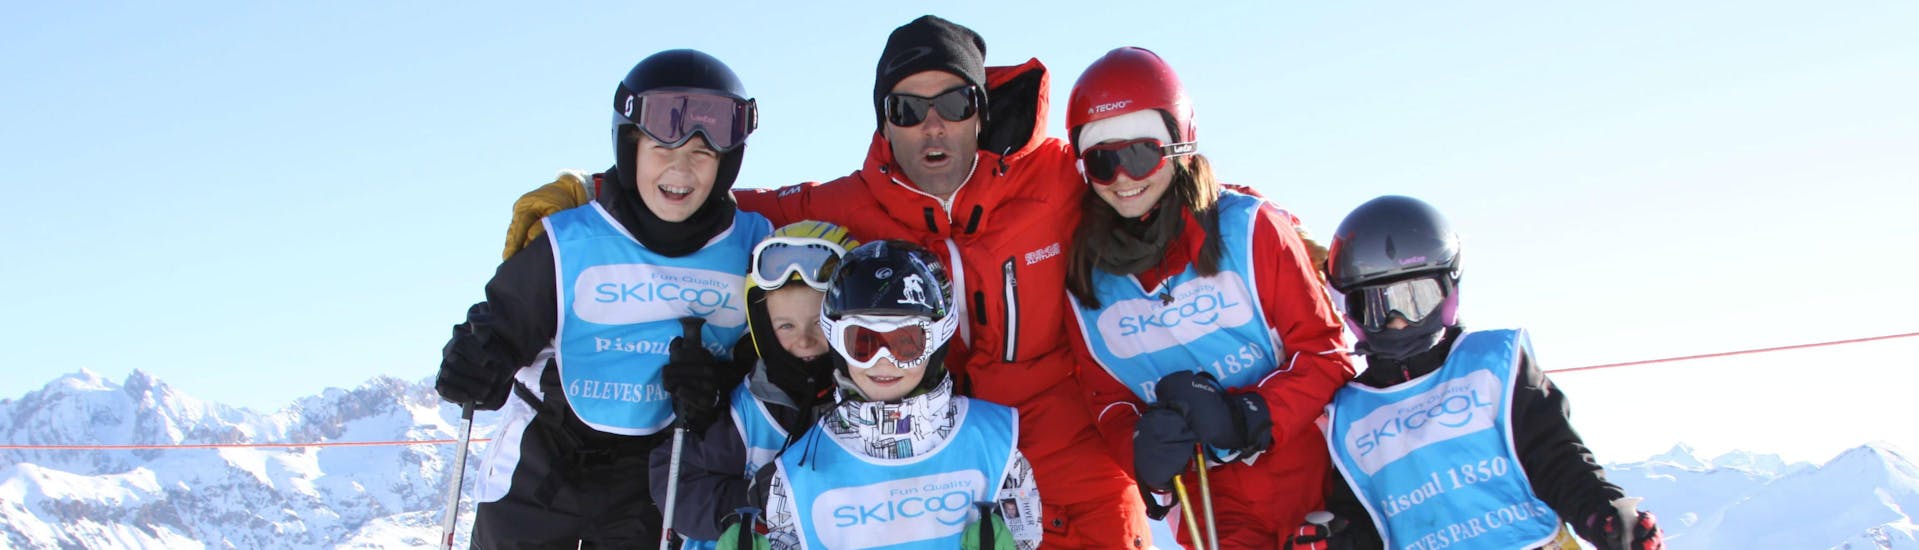 Cours de Ski Enfants (5 à 12 ans) - Vacances - Semaine.